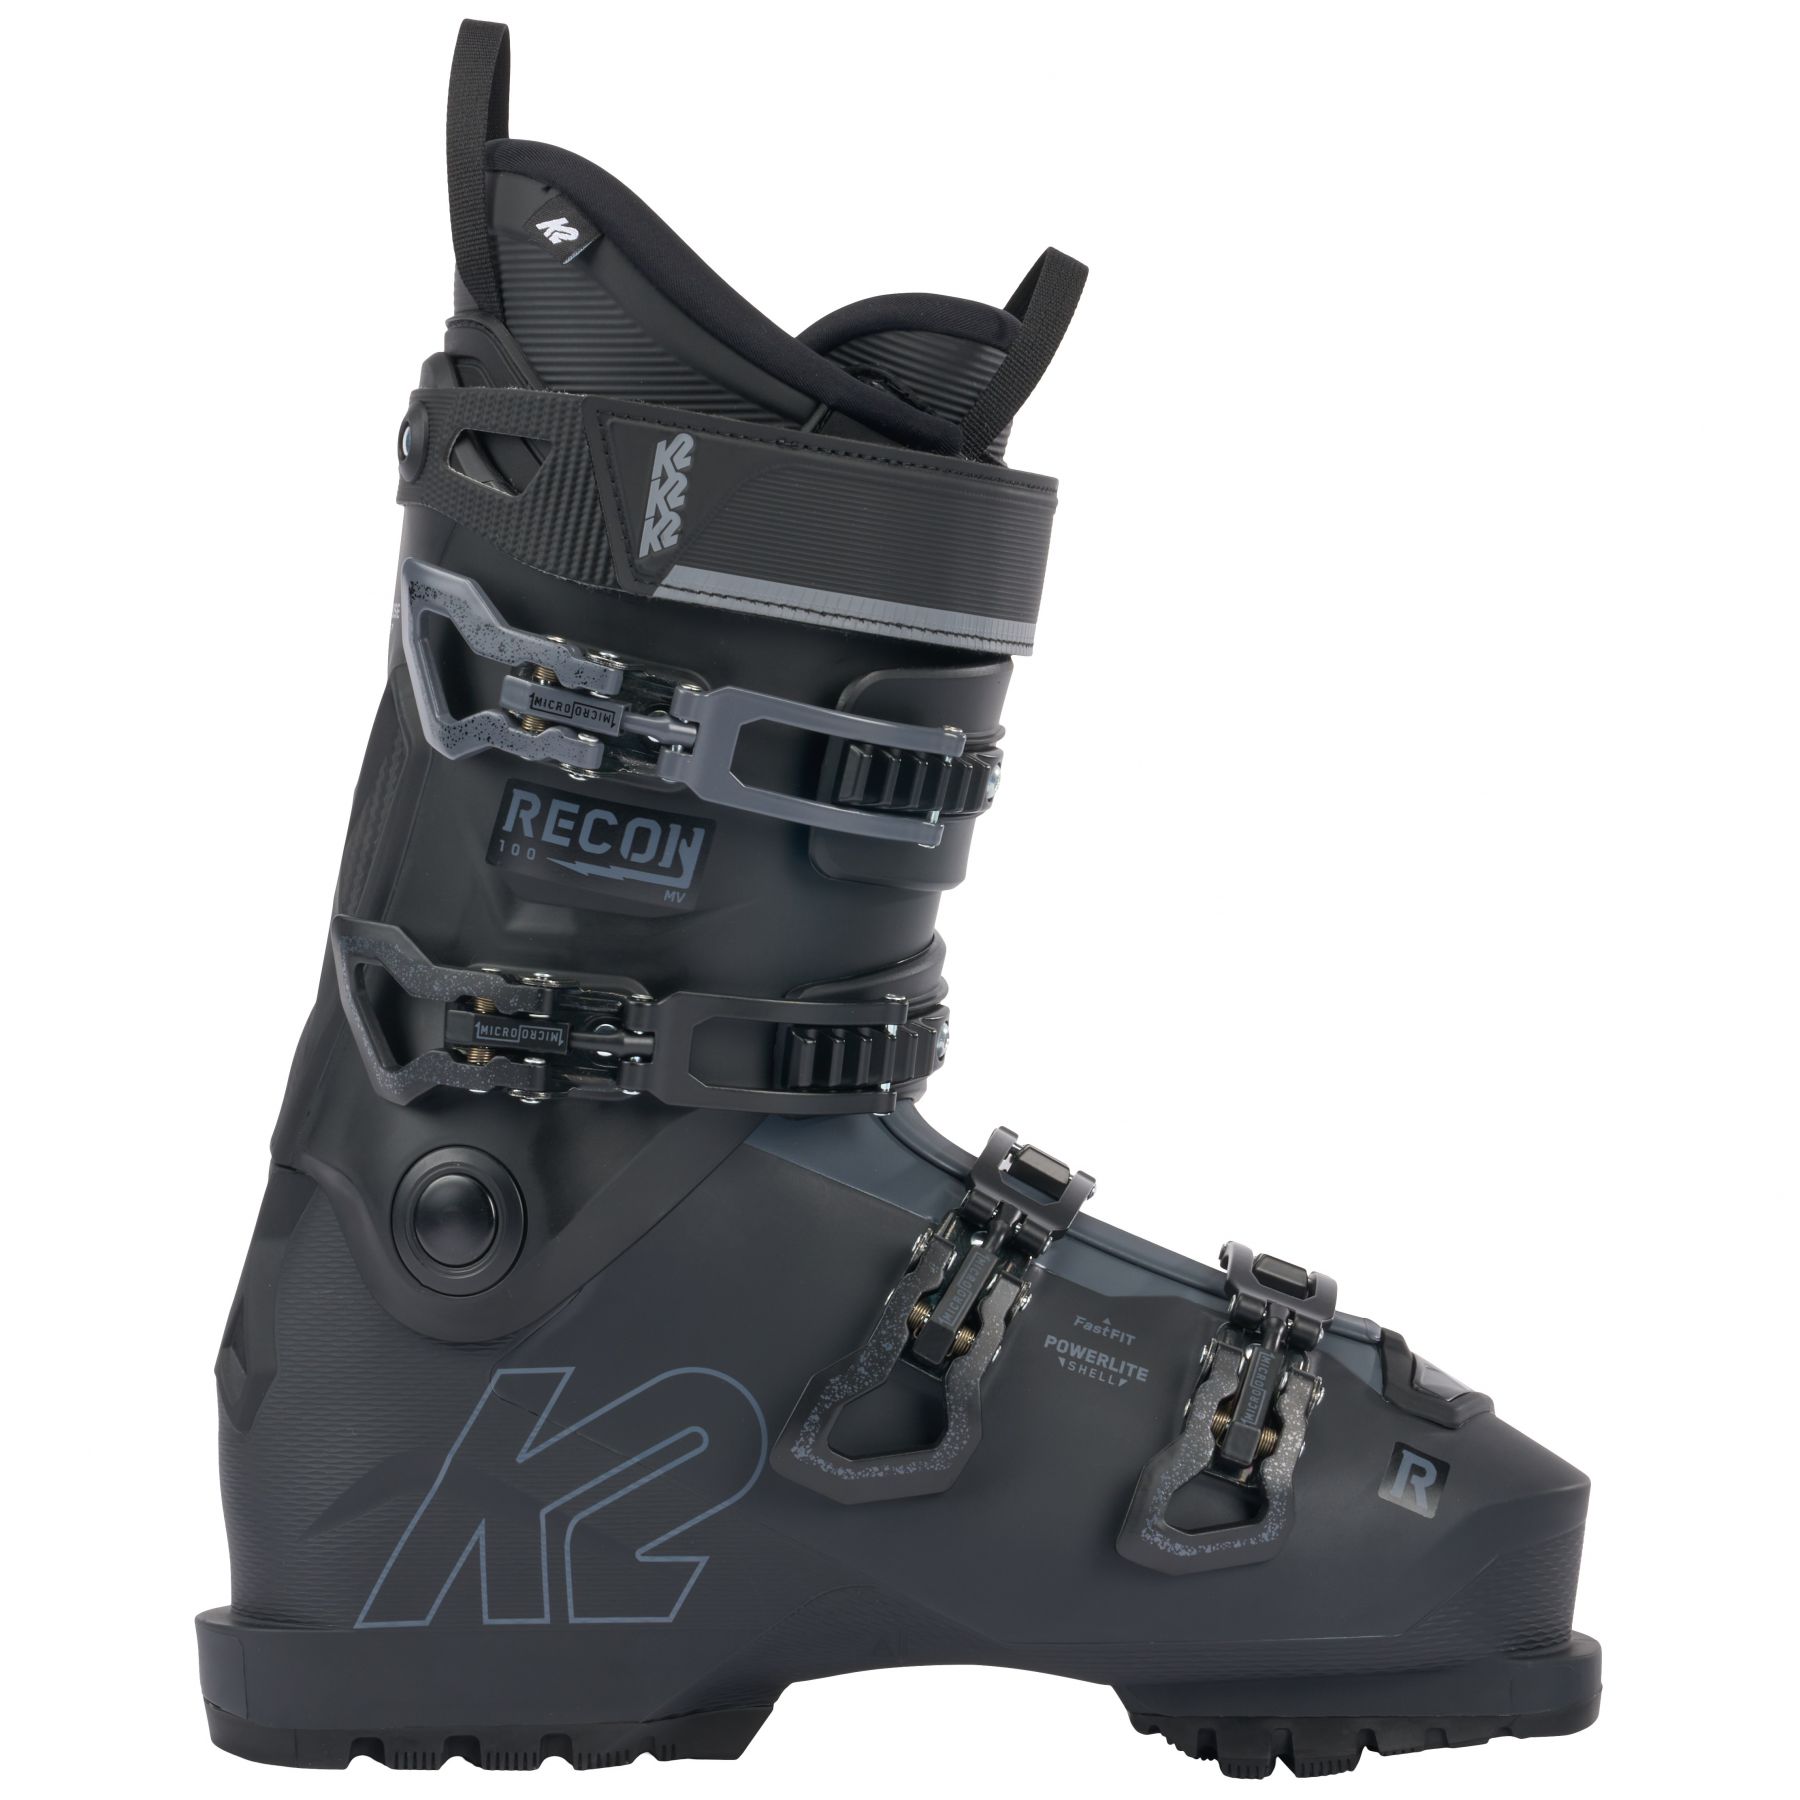 Billede af K2 Recon 100 MV, skistøvler, herre, sort hos Skisport.dk